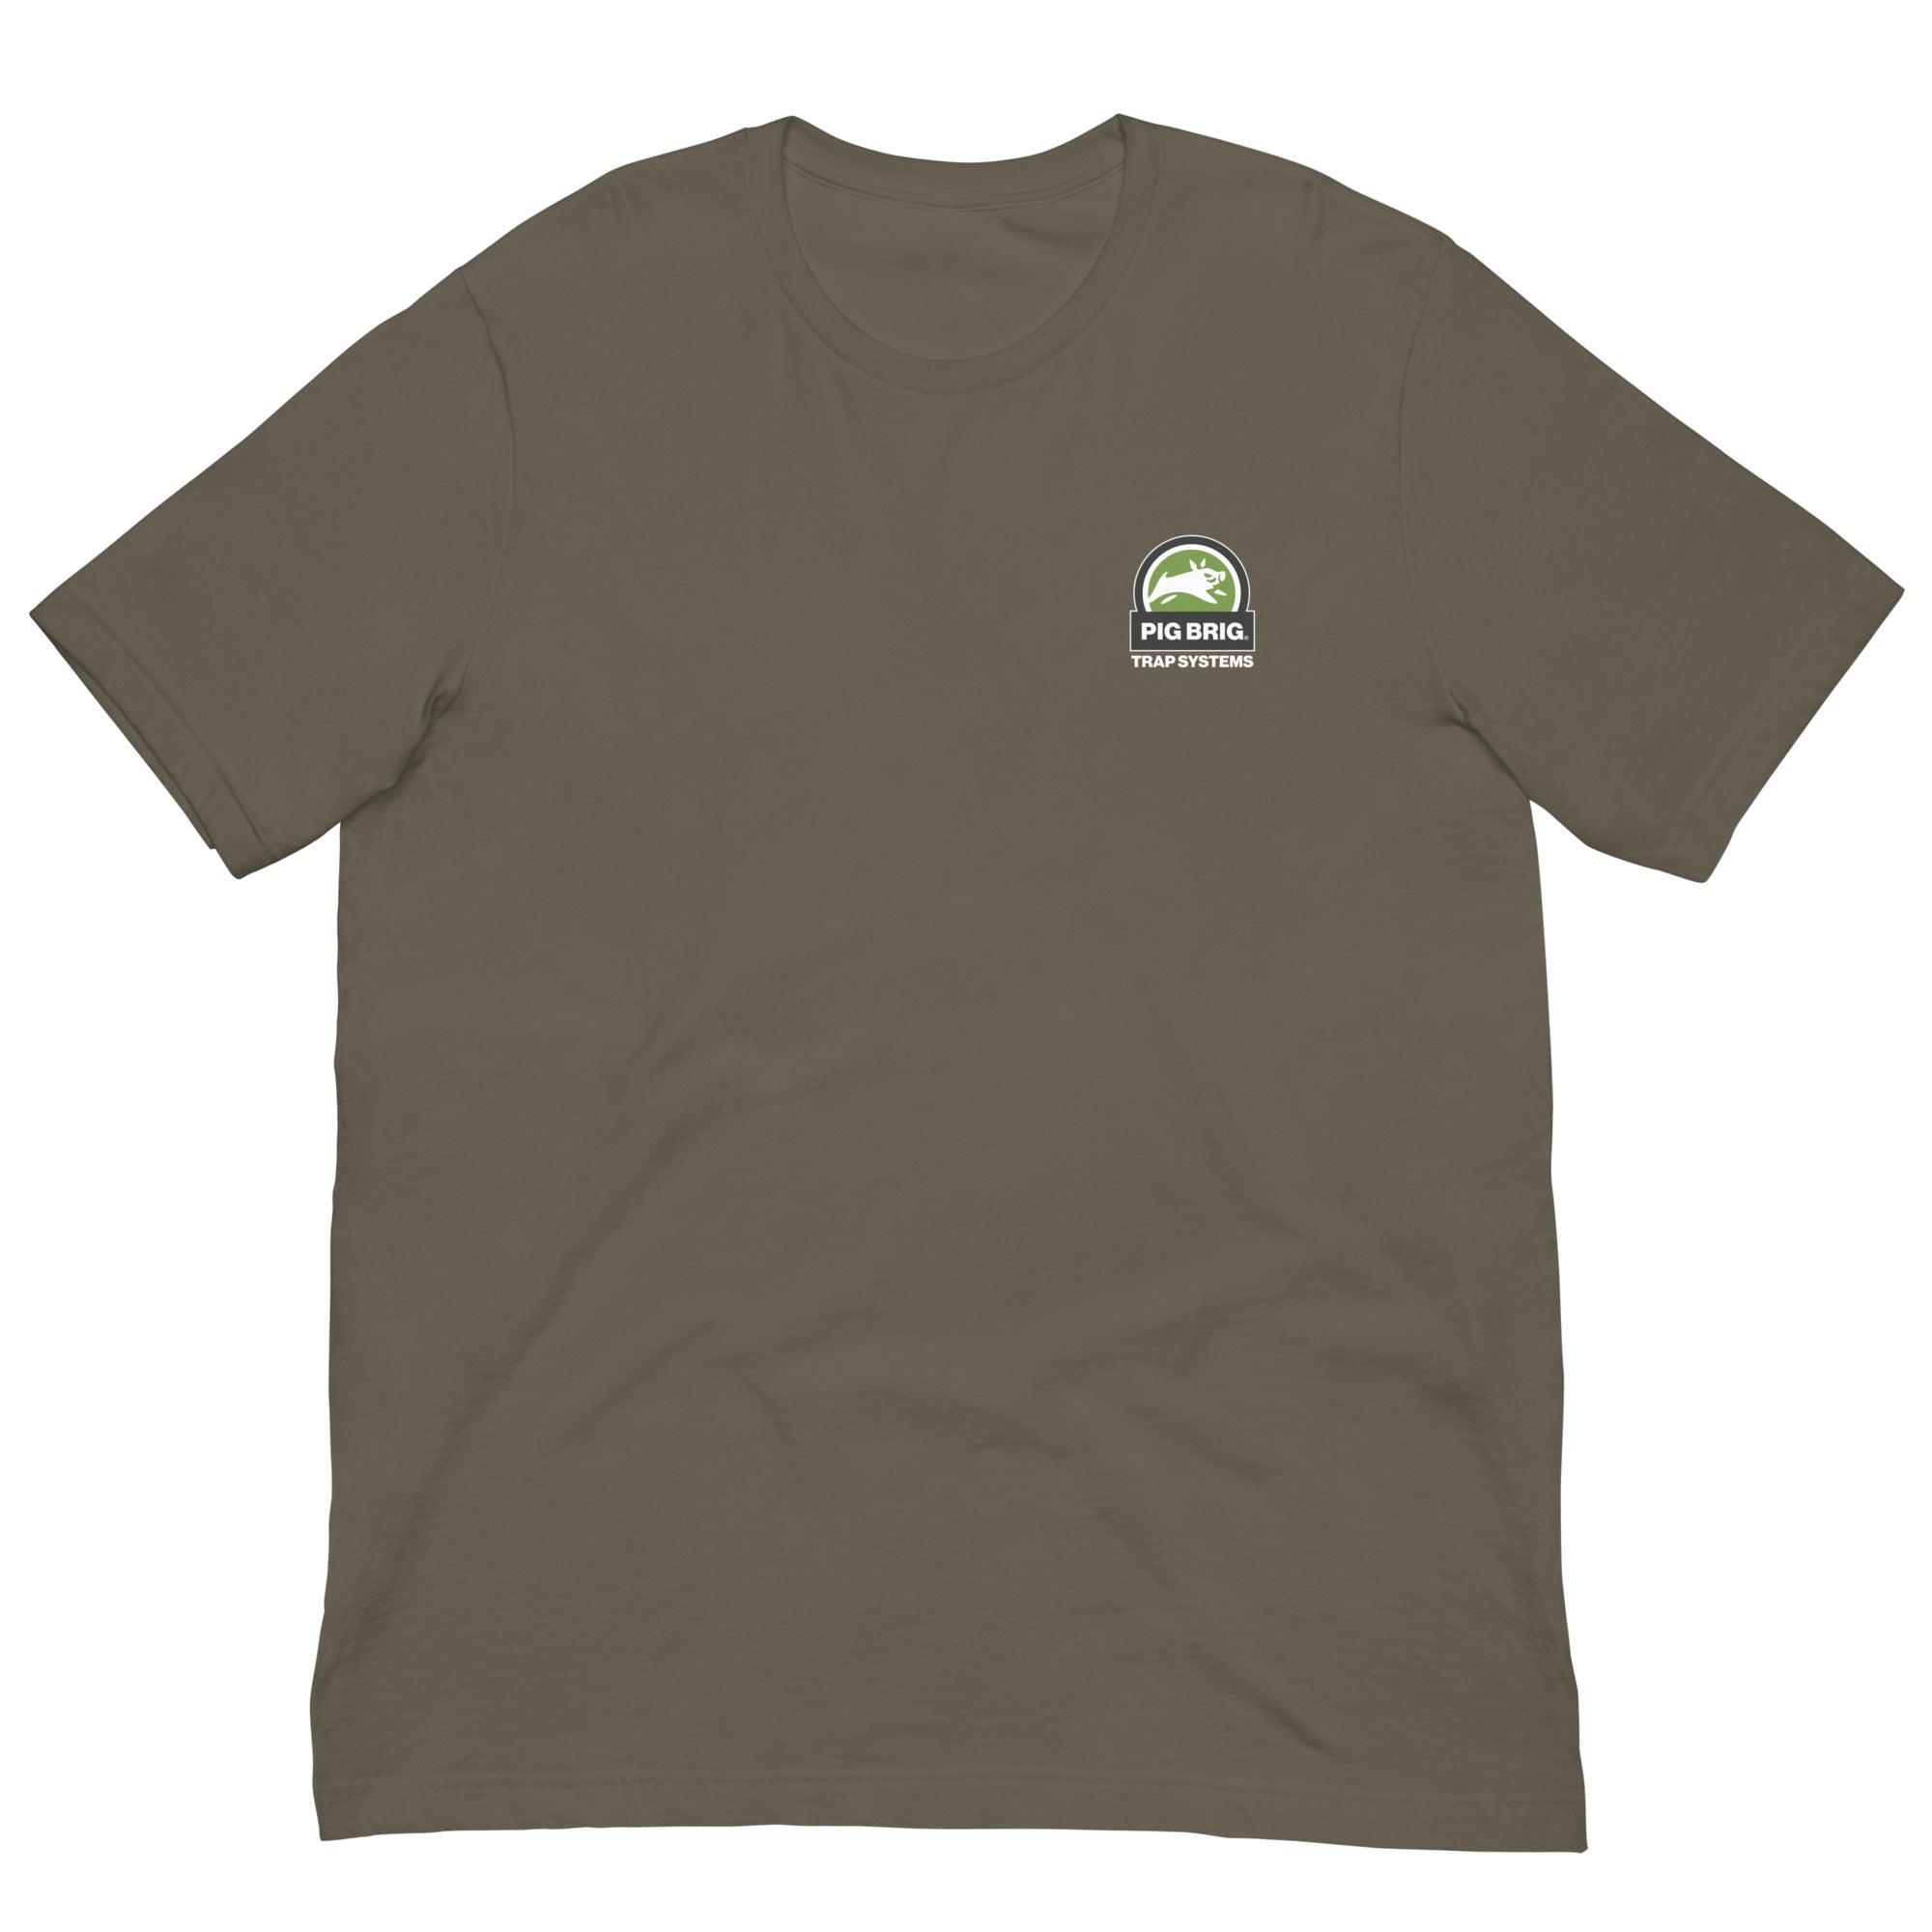 Nothing But Net. - Short-Sleeve Unisex T-Shirt